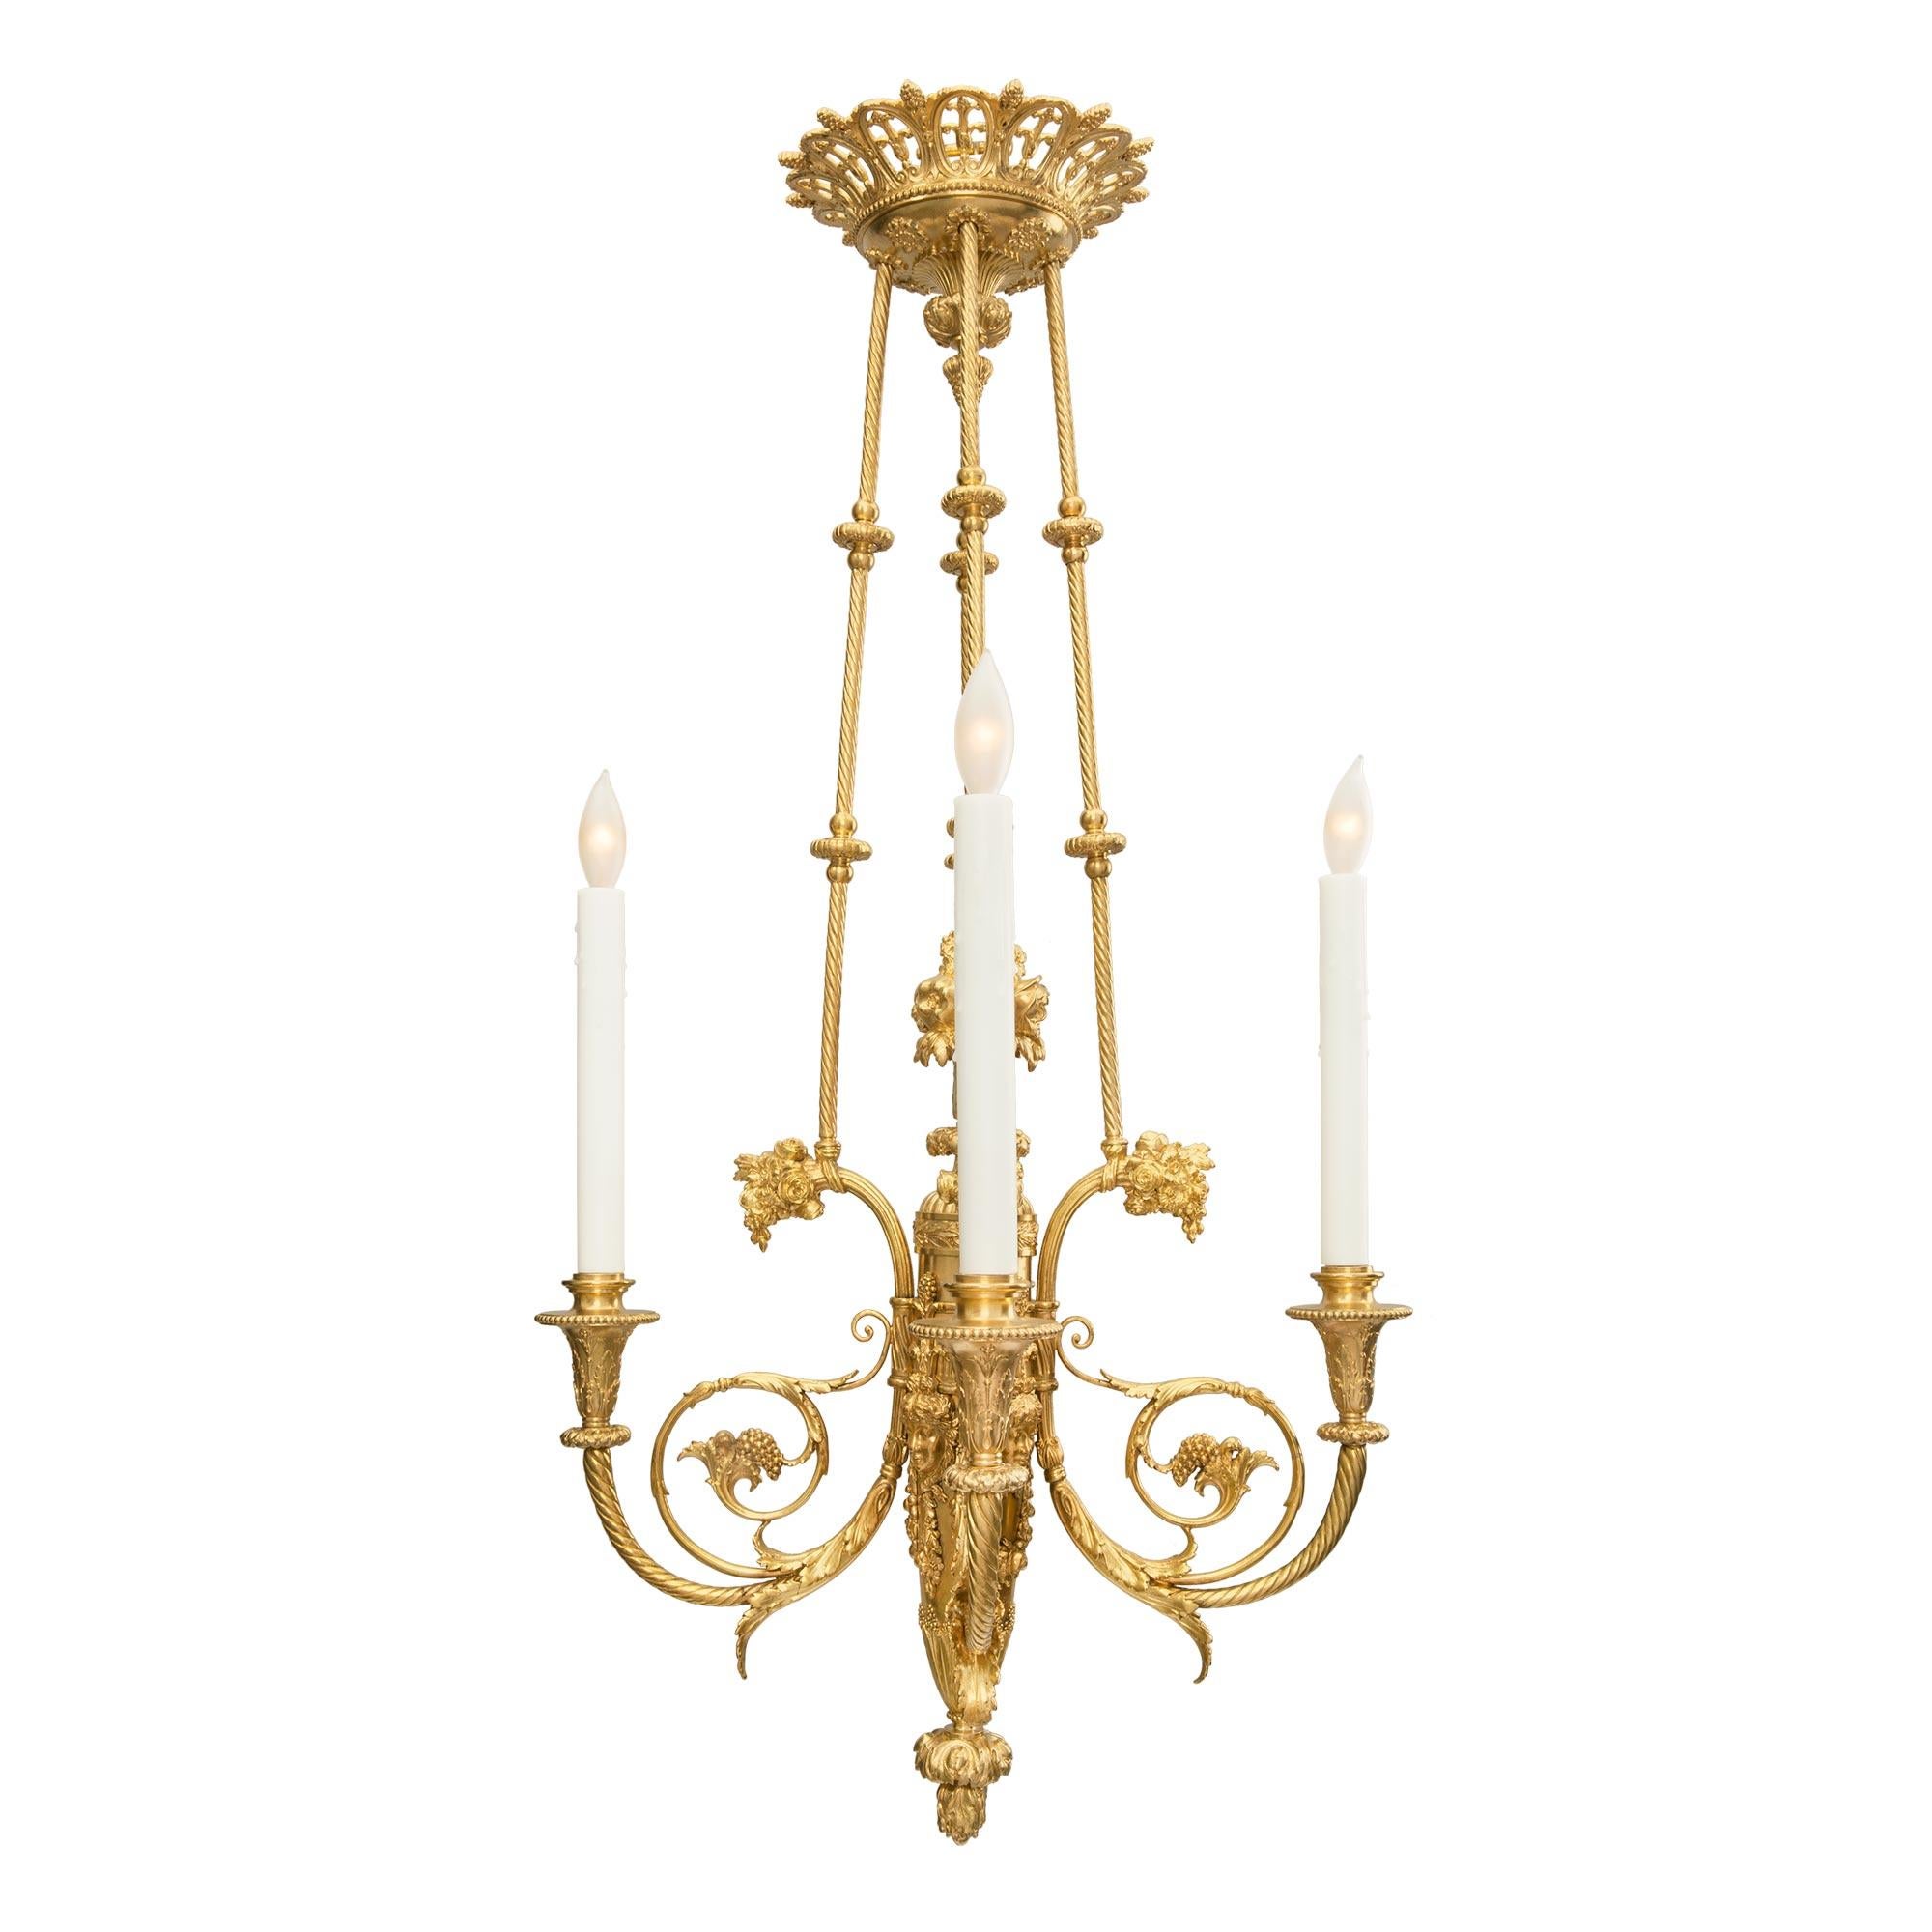 Un très élégant et de haute qualité lustre à quatre bras de lumière en bronze doré de style Louis XVI du 19ème siècle signé F. BARBEDIENNE PARIS. Le lustre est centré par un magnifique épi de faîtage à fond inversé en forme de baie, sous de belles